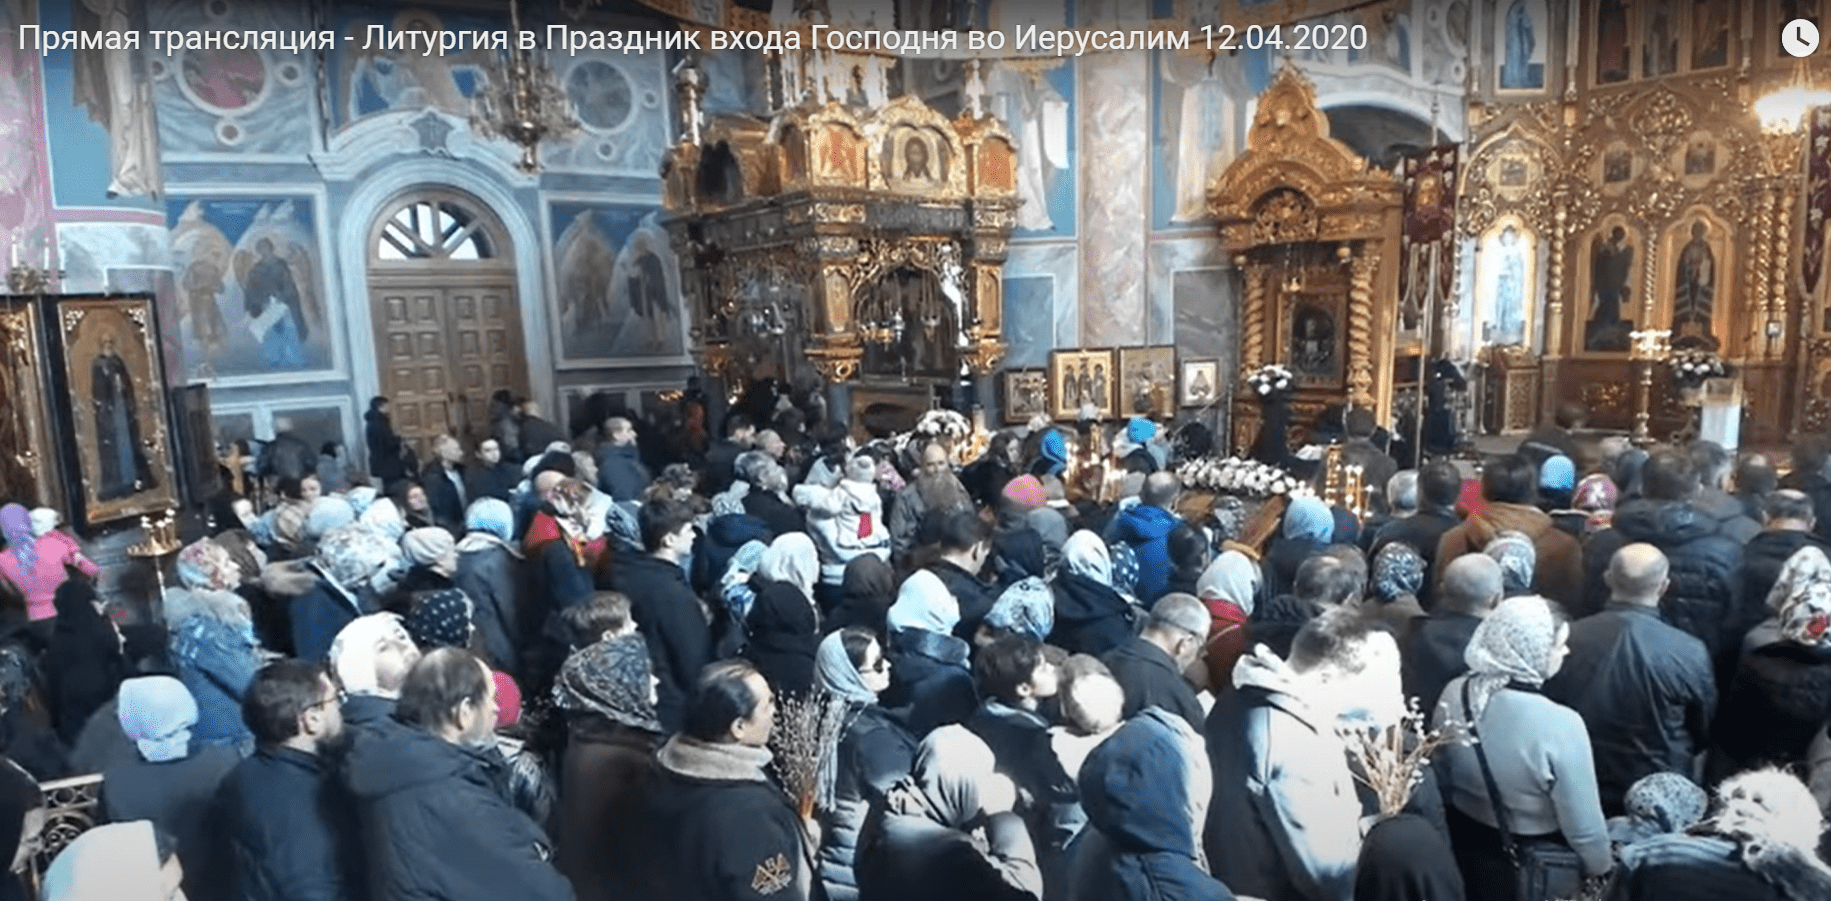 Скриншот прямой трансляции литургии в Дивеево. Запись длится 2,5 часа, всё это время в кадре — полно людей.